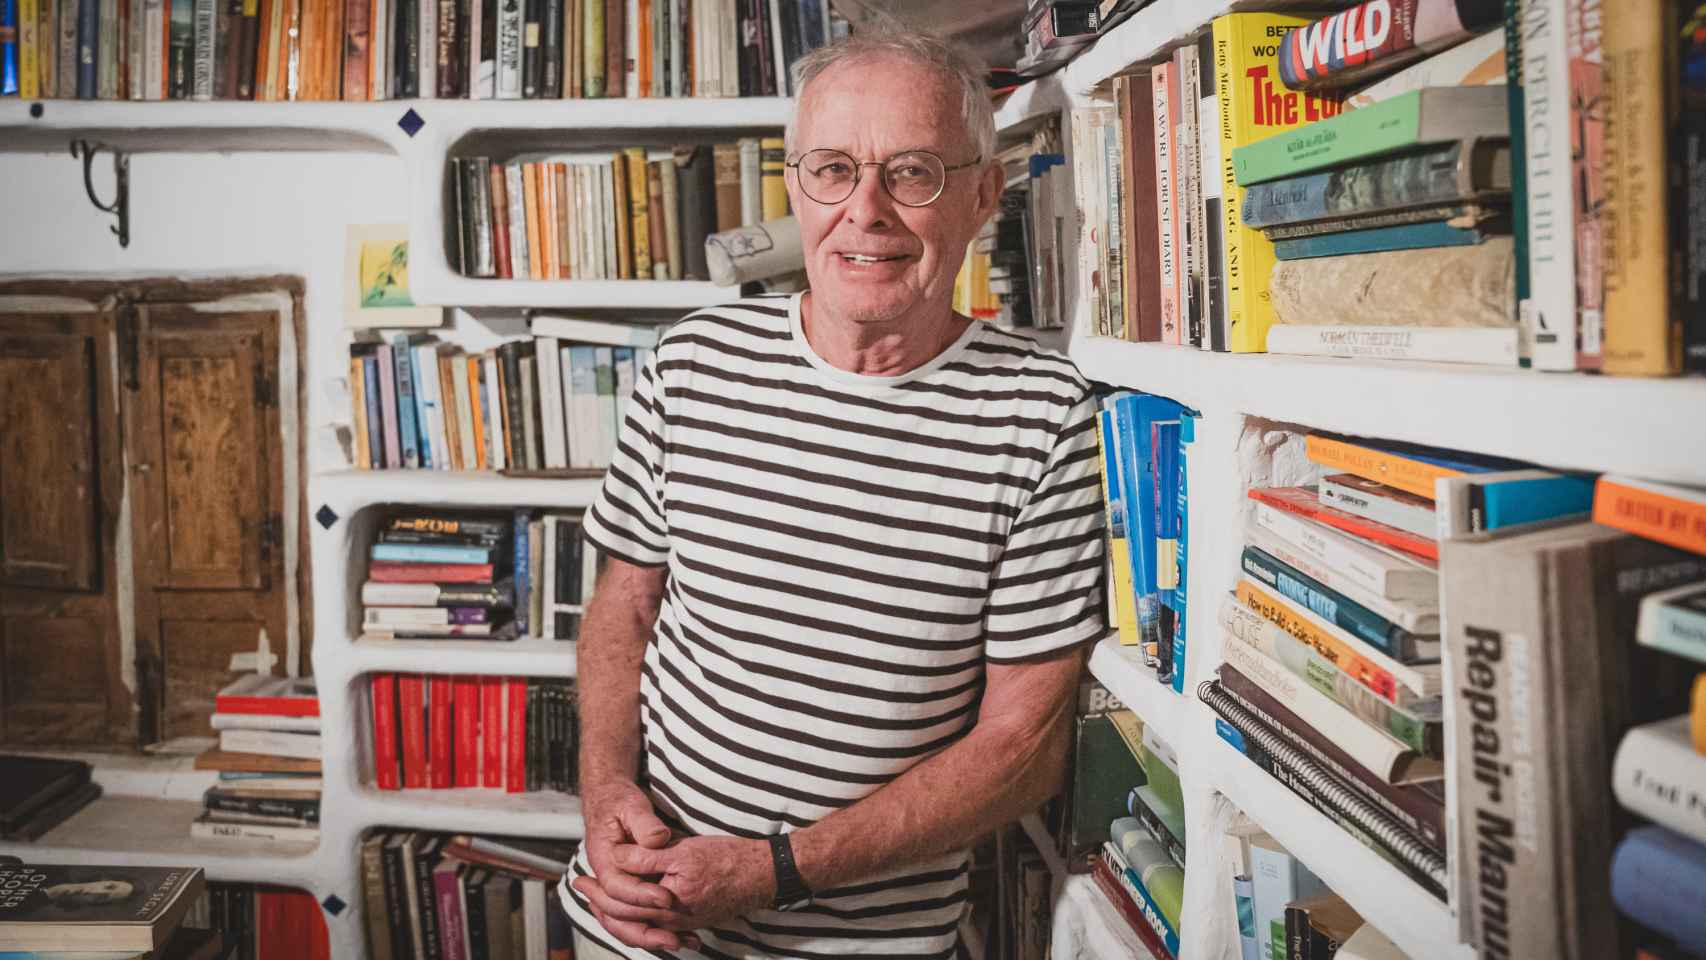 Chris Stewart posa en su biblioteca, compuesta por miles de libros, la mayoría escritos en inglés.